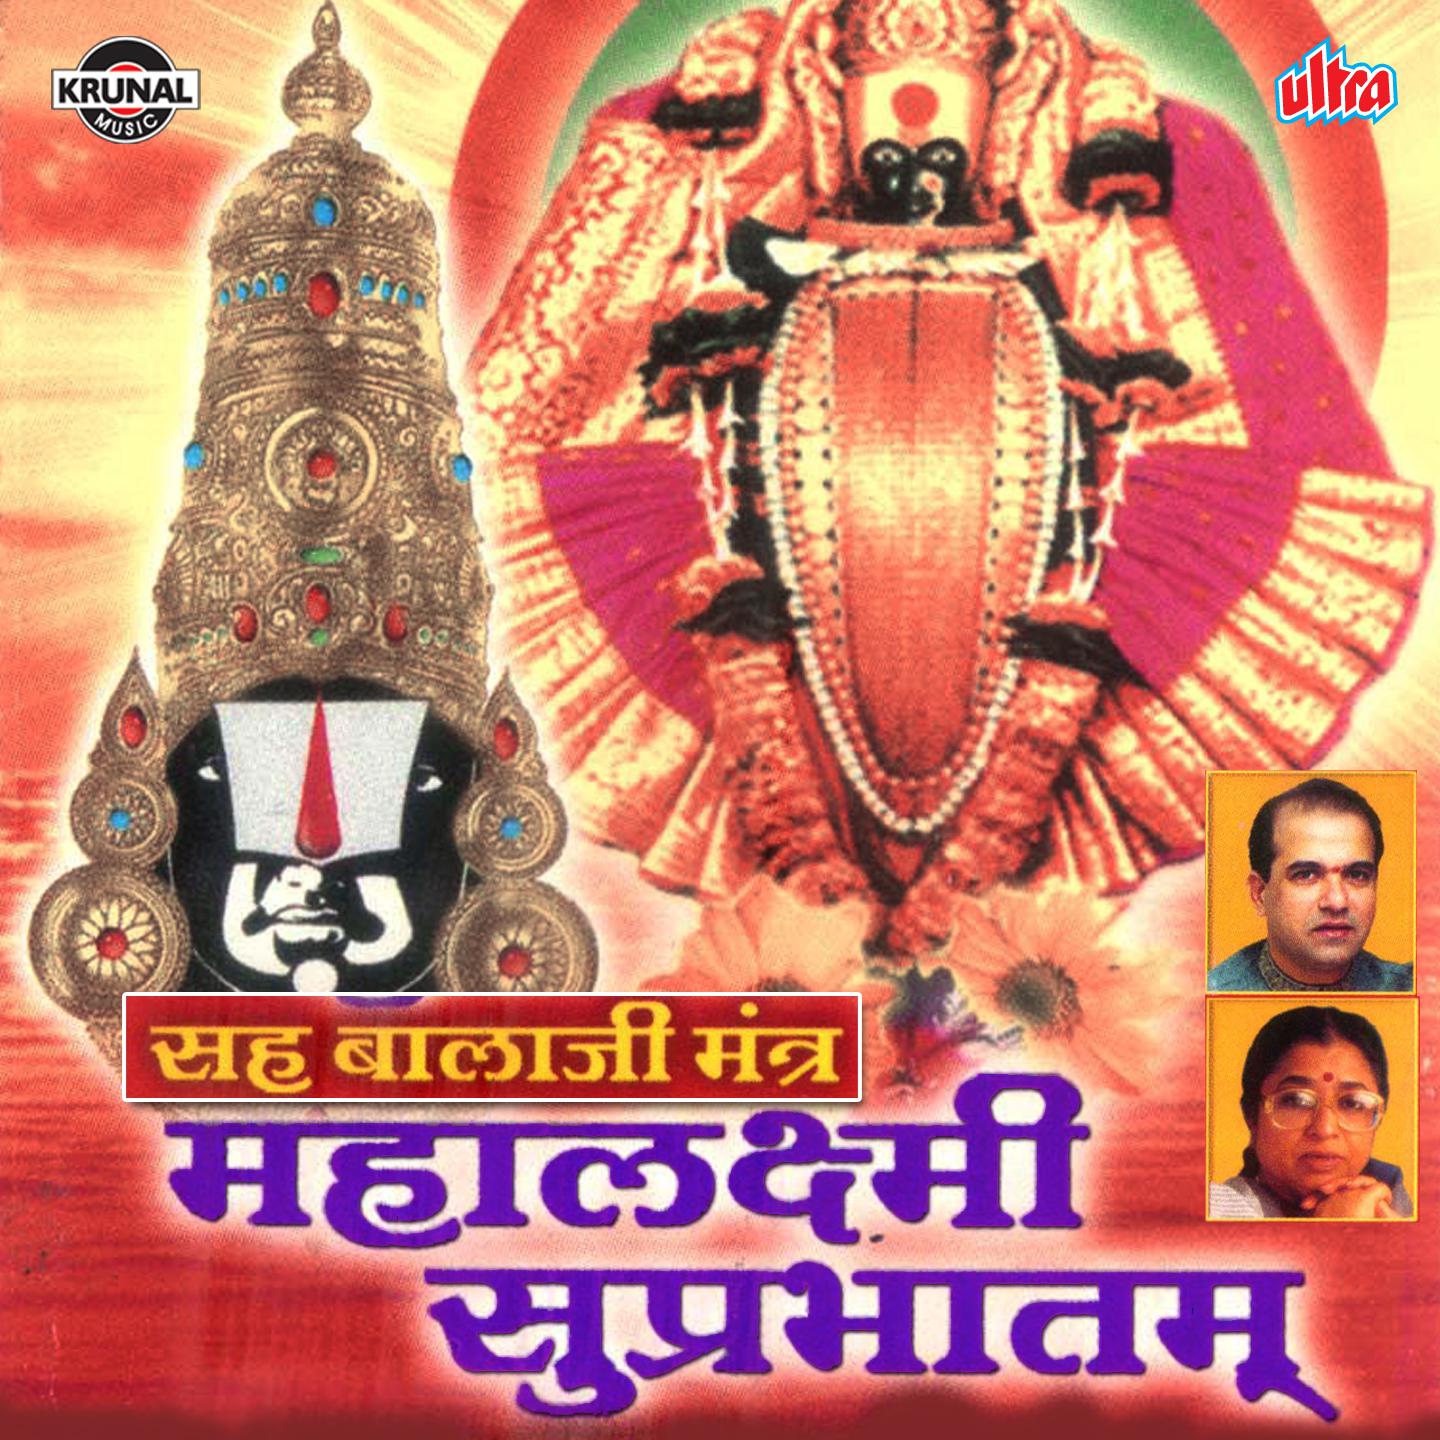 Shri Mahalaxmi Suprabhatam Sah Balaji Mantra